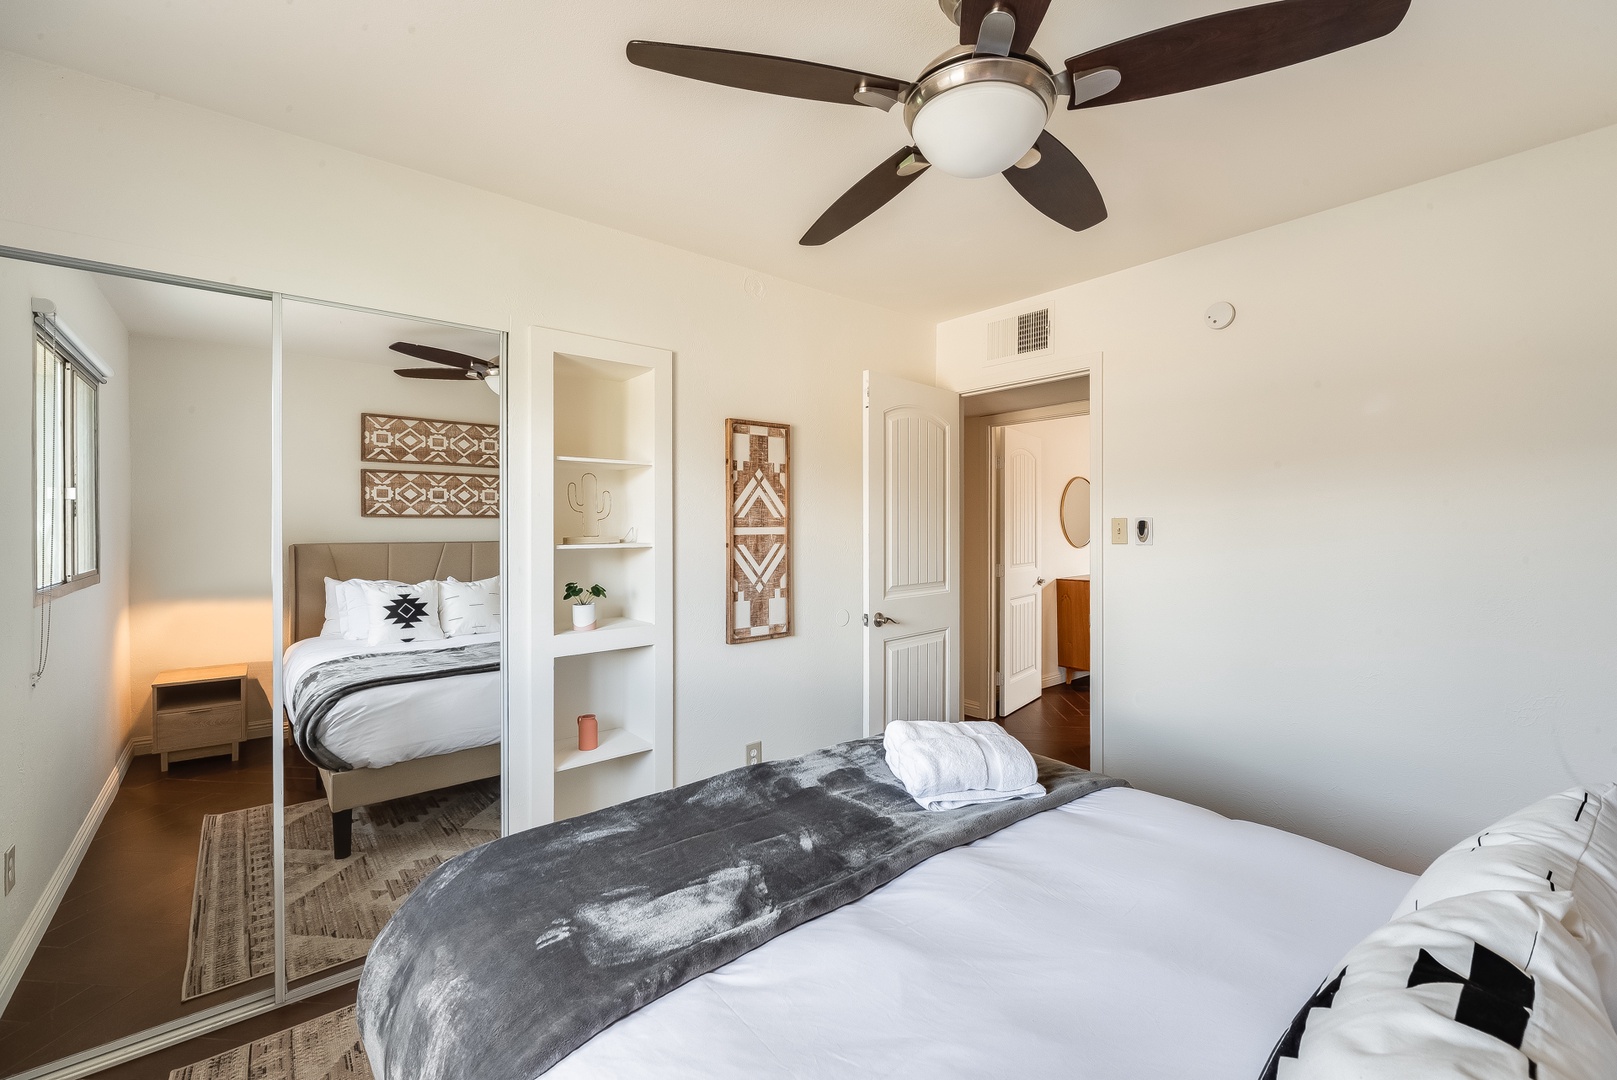 Phoenix Vacation Rentals, Desert Oasis - Ensuite bath in guest bedroom 3 as well